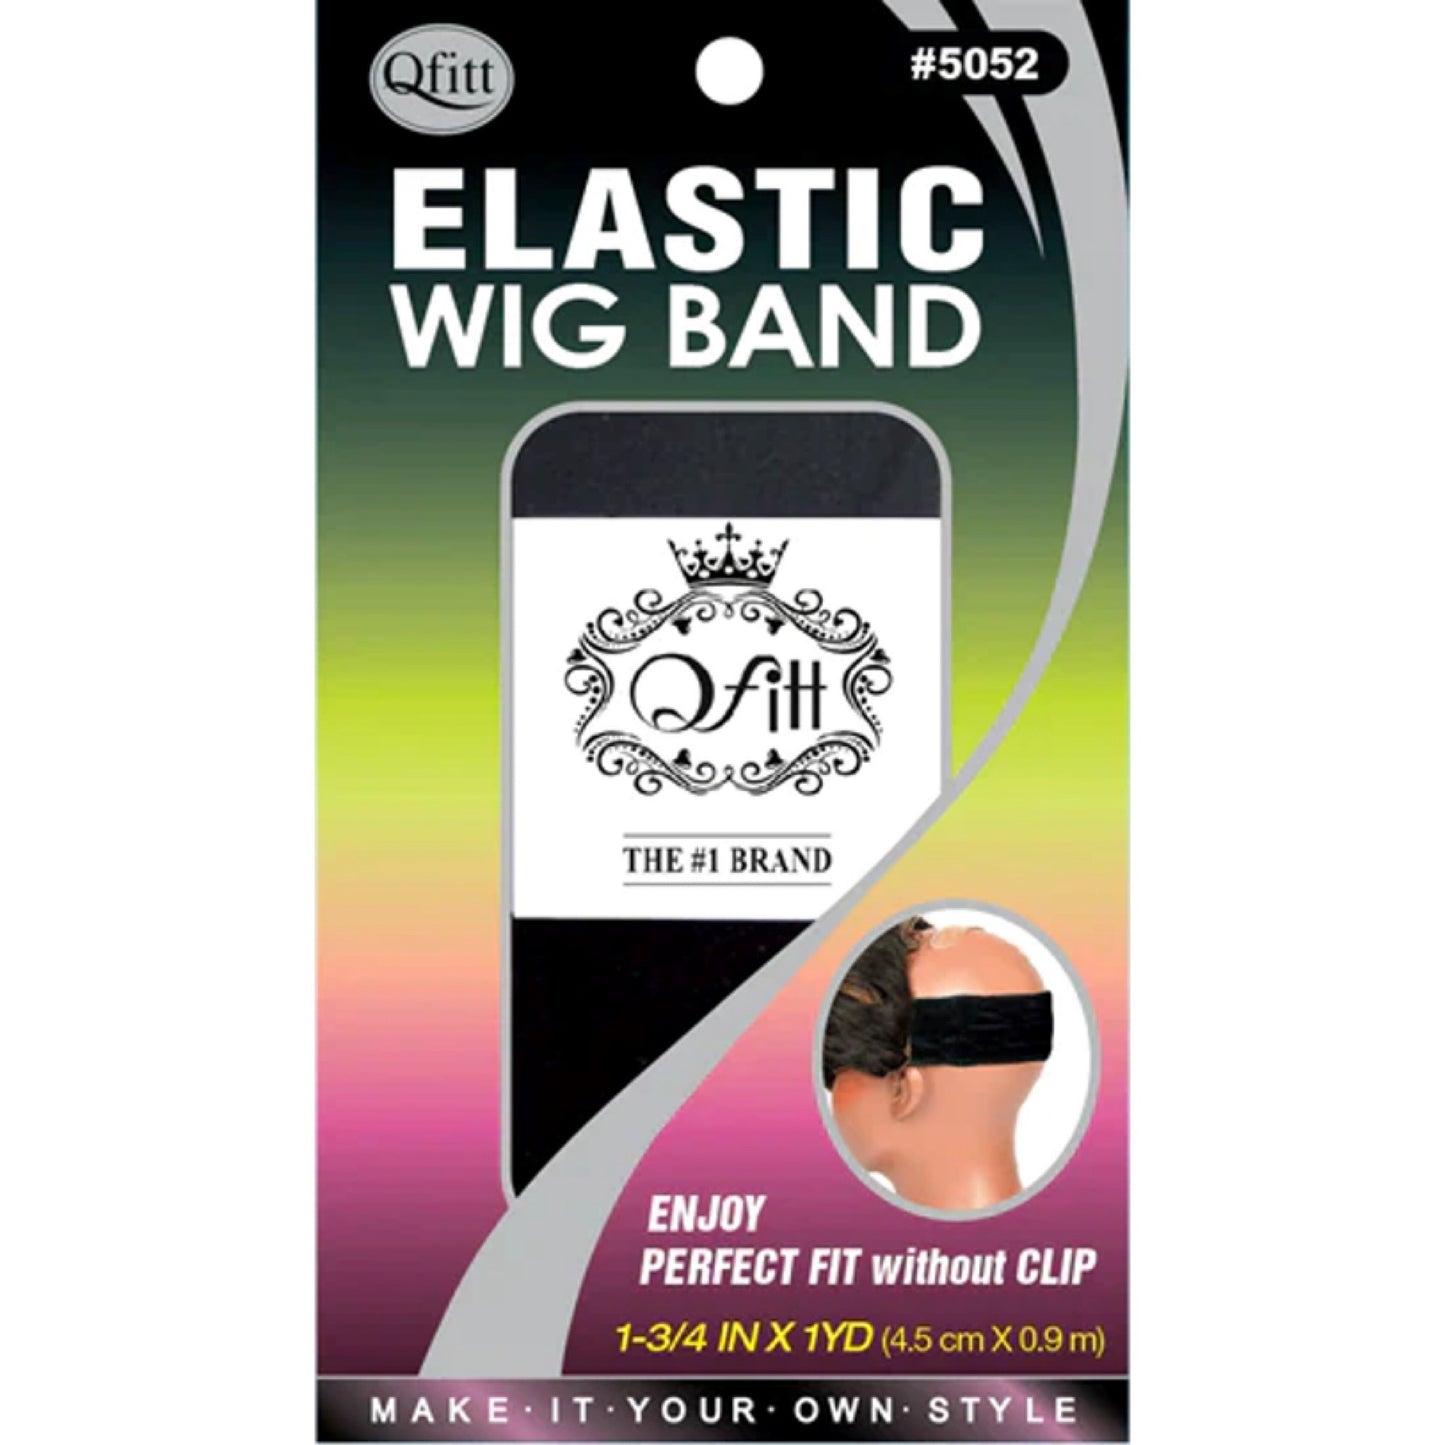 Qfitt Elastic Wig Band | 5052 Black